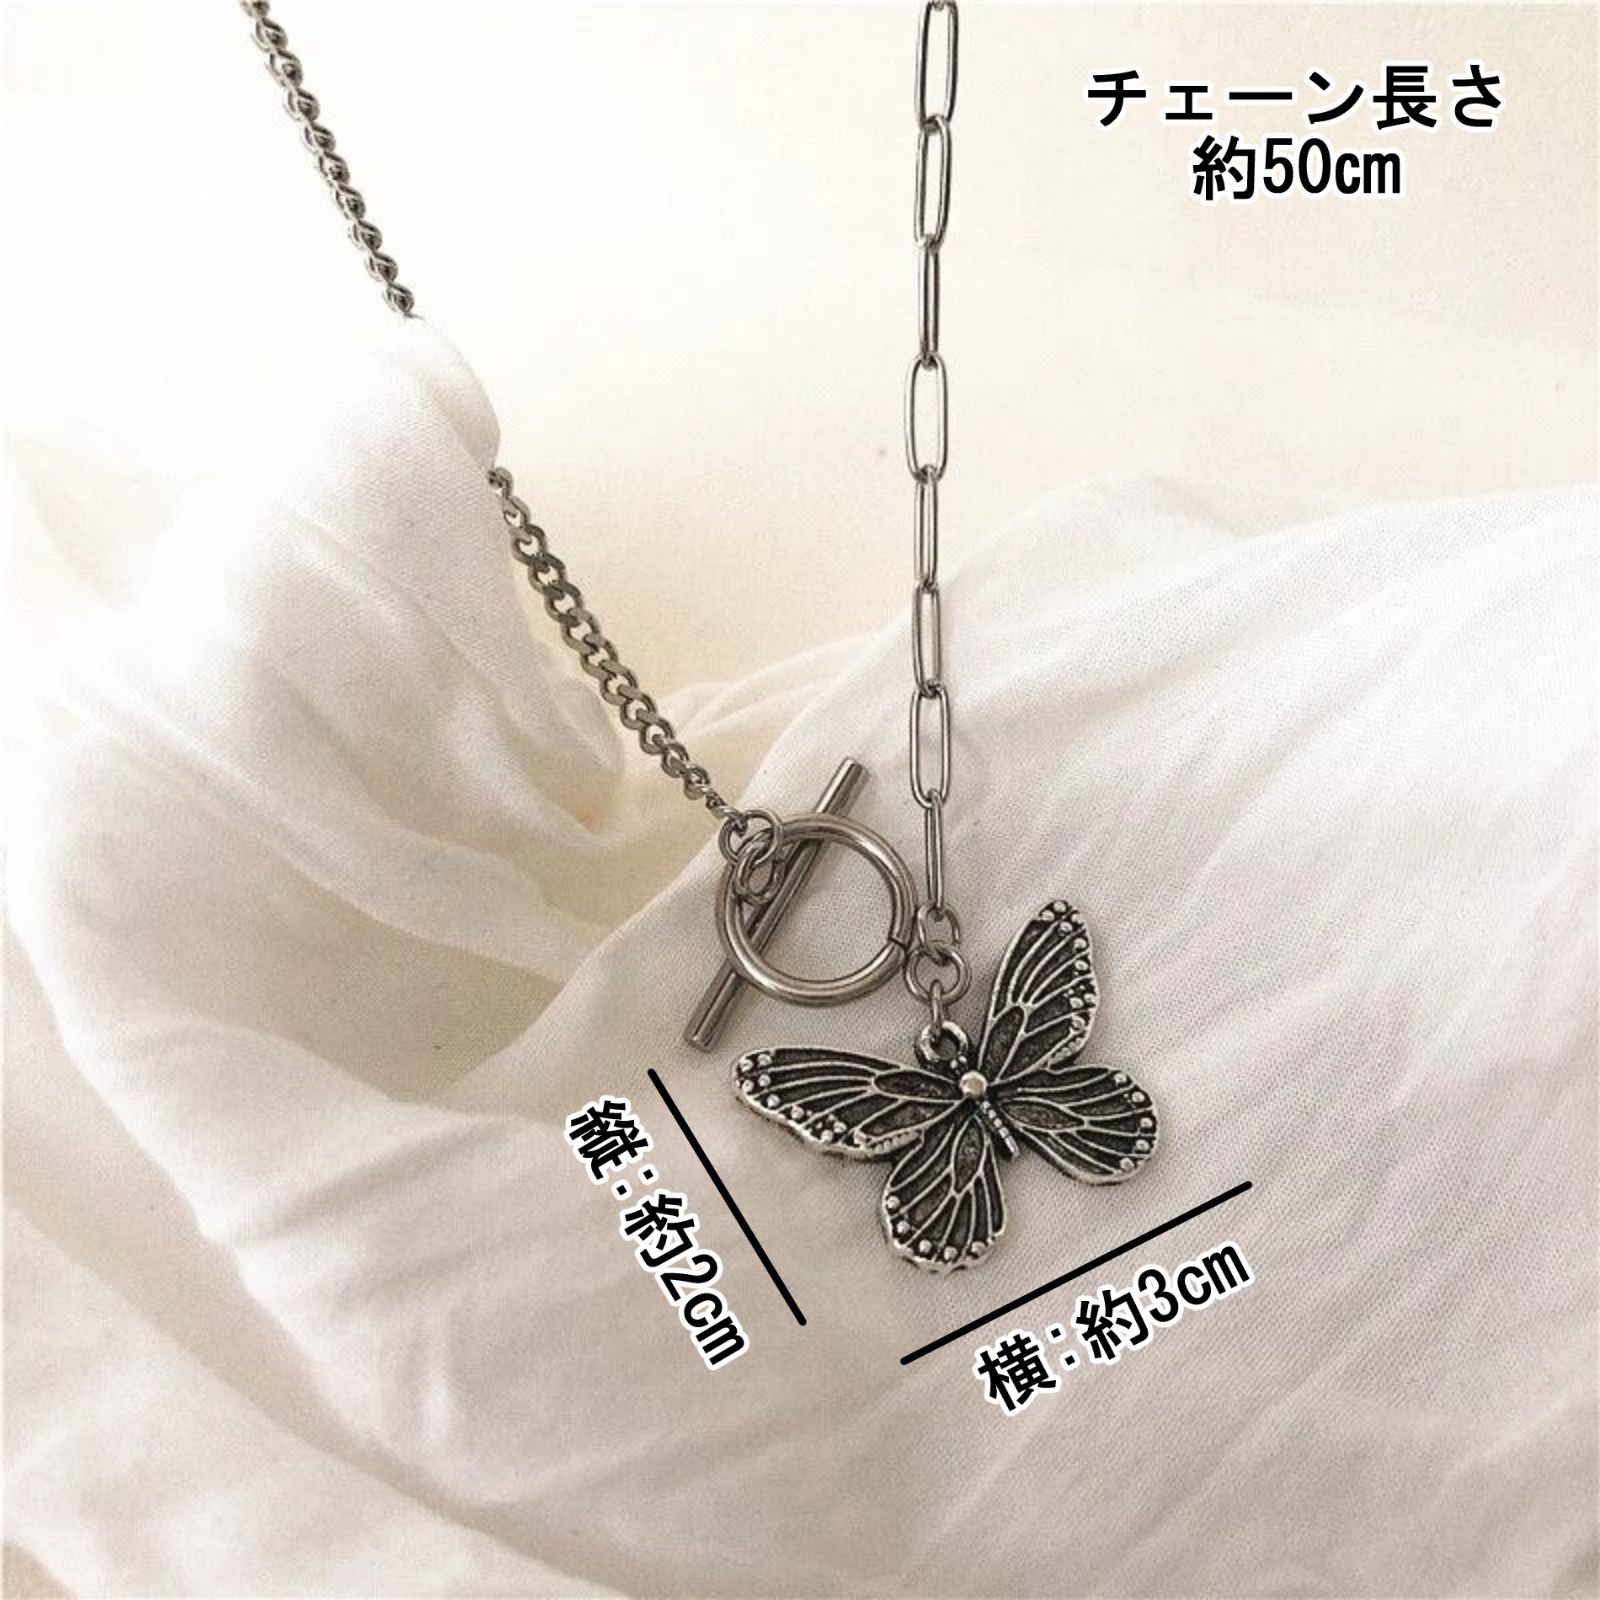 バタフライネックレス 蝶々 レディース アクセサリー 韓国 ファッション 通販